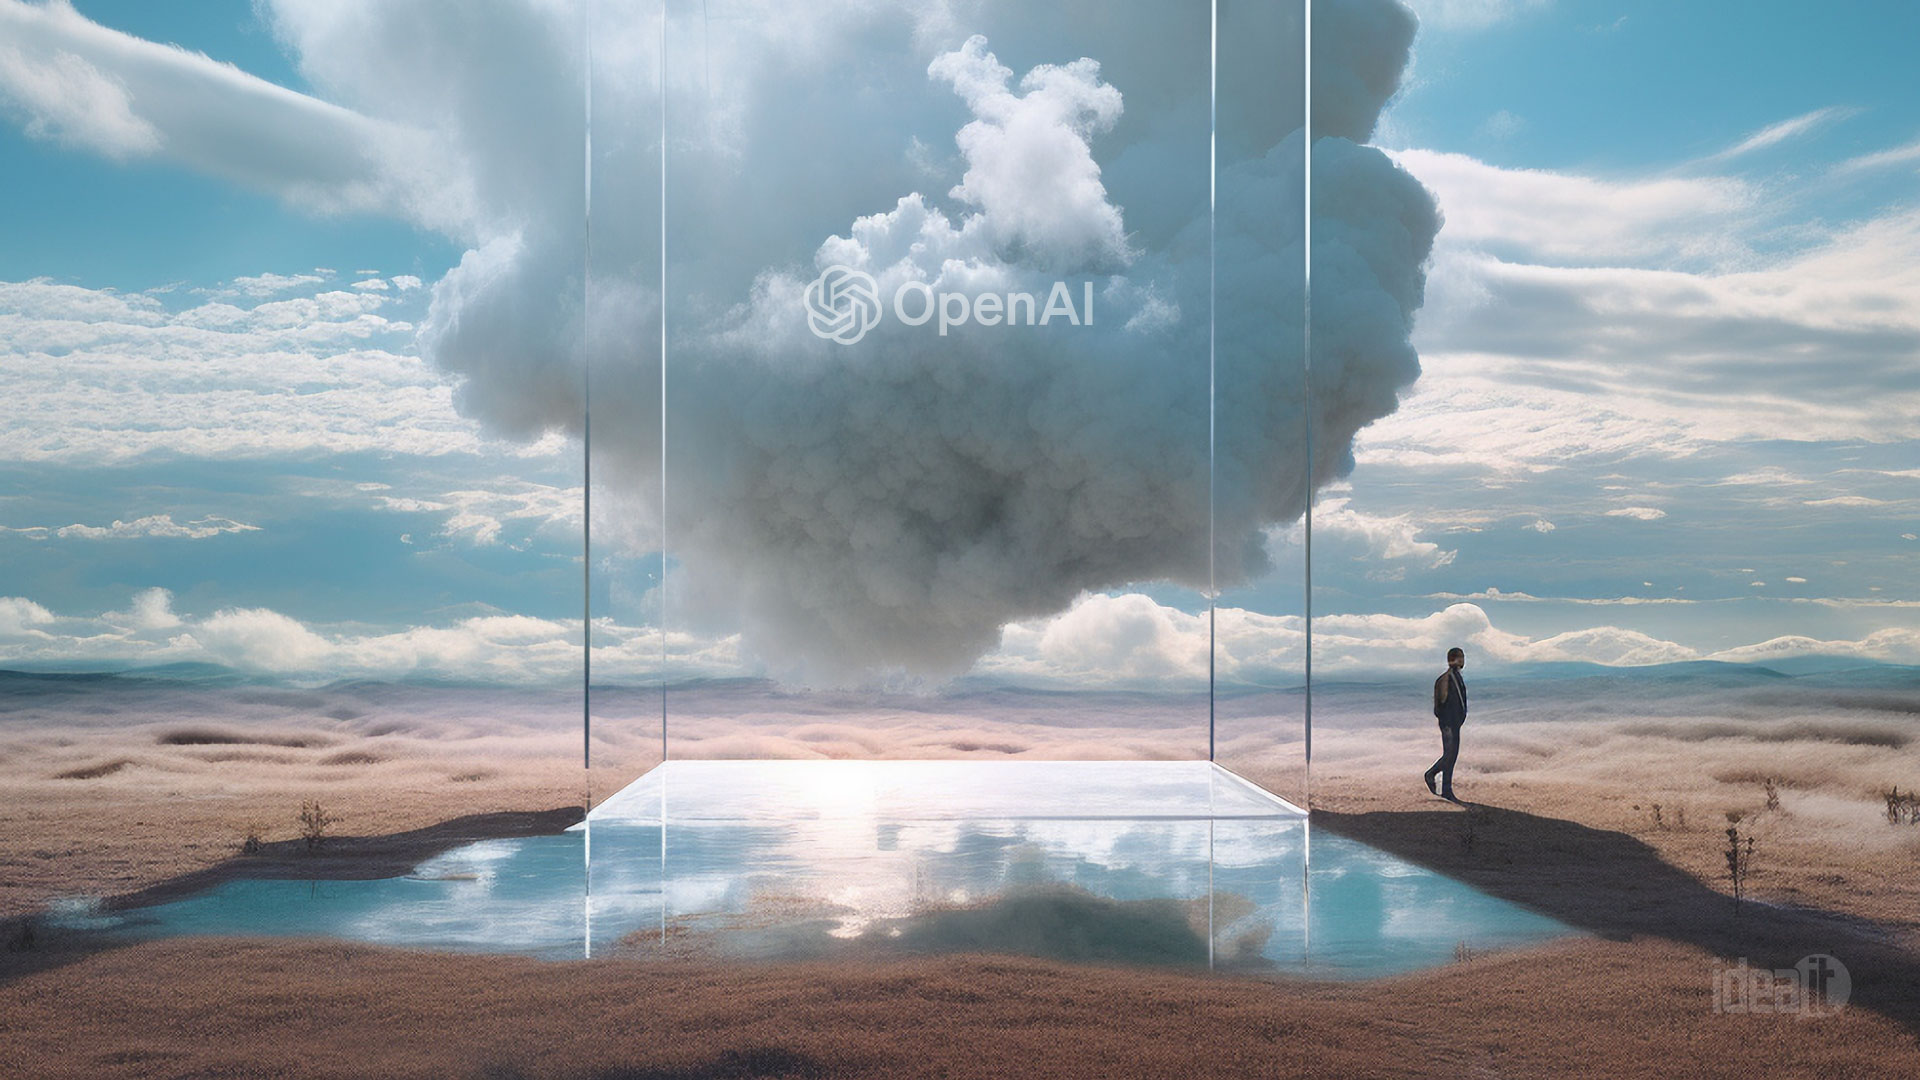 Sora di OpenAI: La Nuova Frontiera della Creatività Digitale